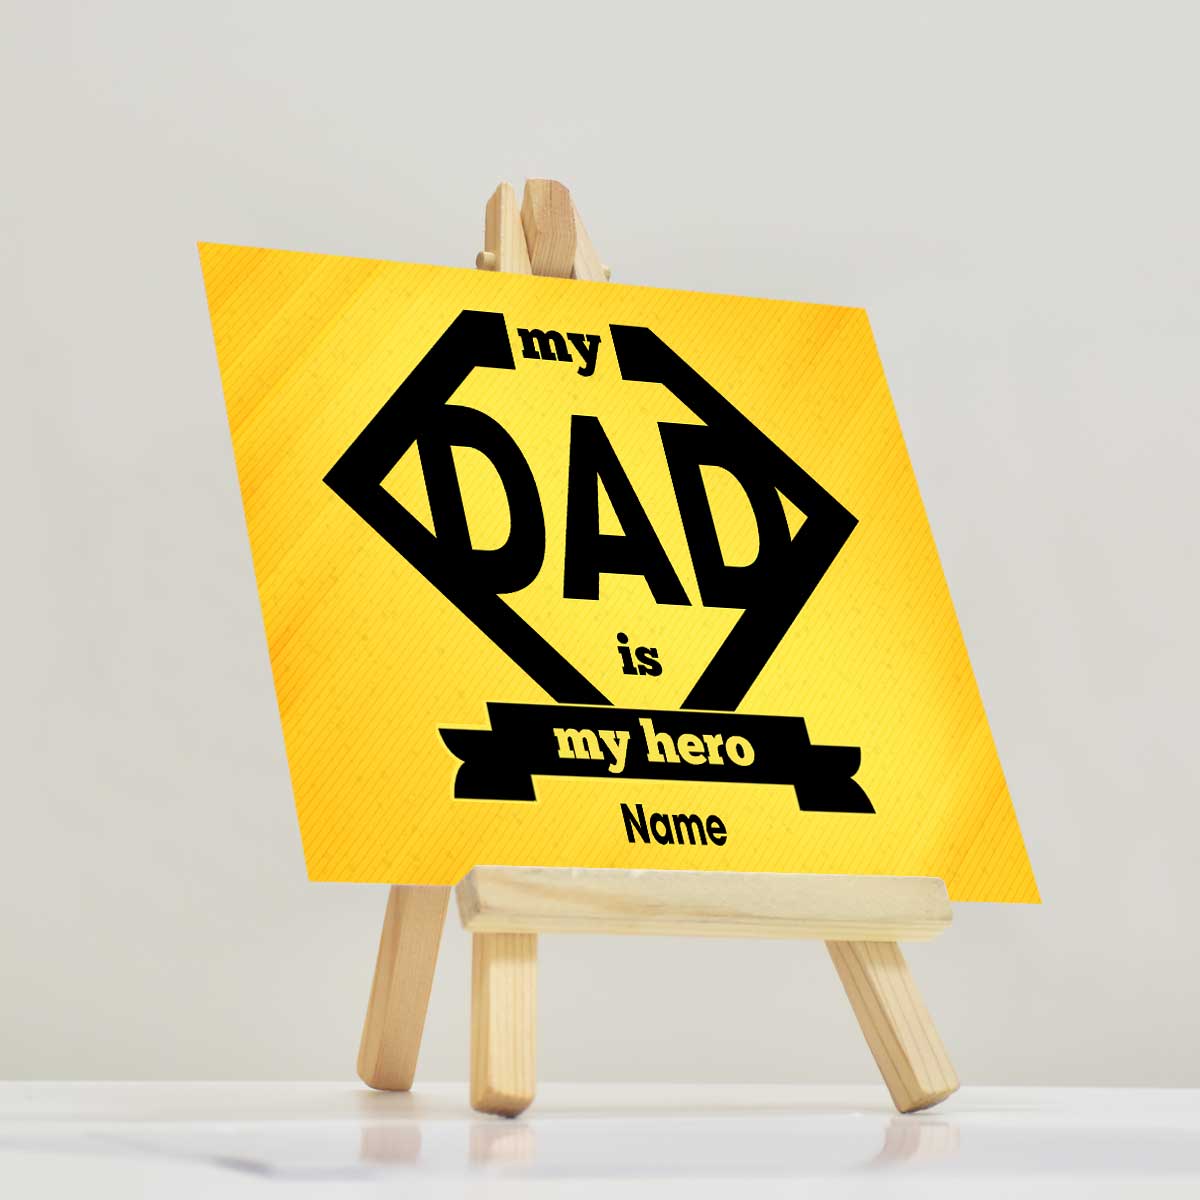 Personalised My Dad Is My Hero Mini Easel-2